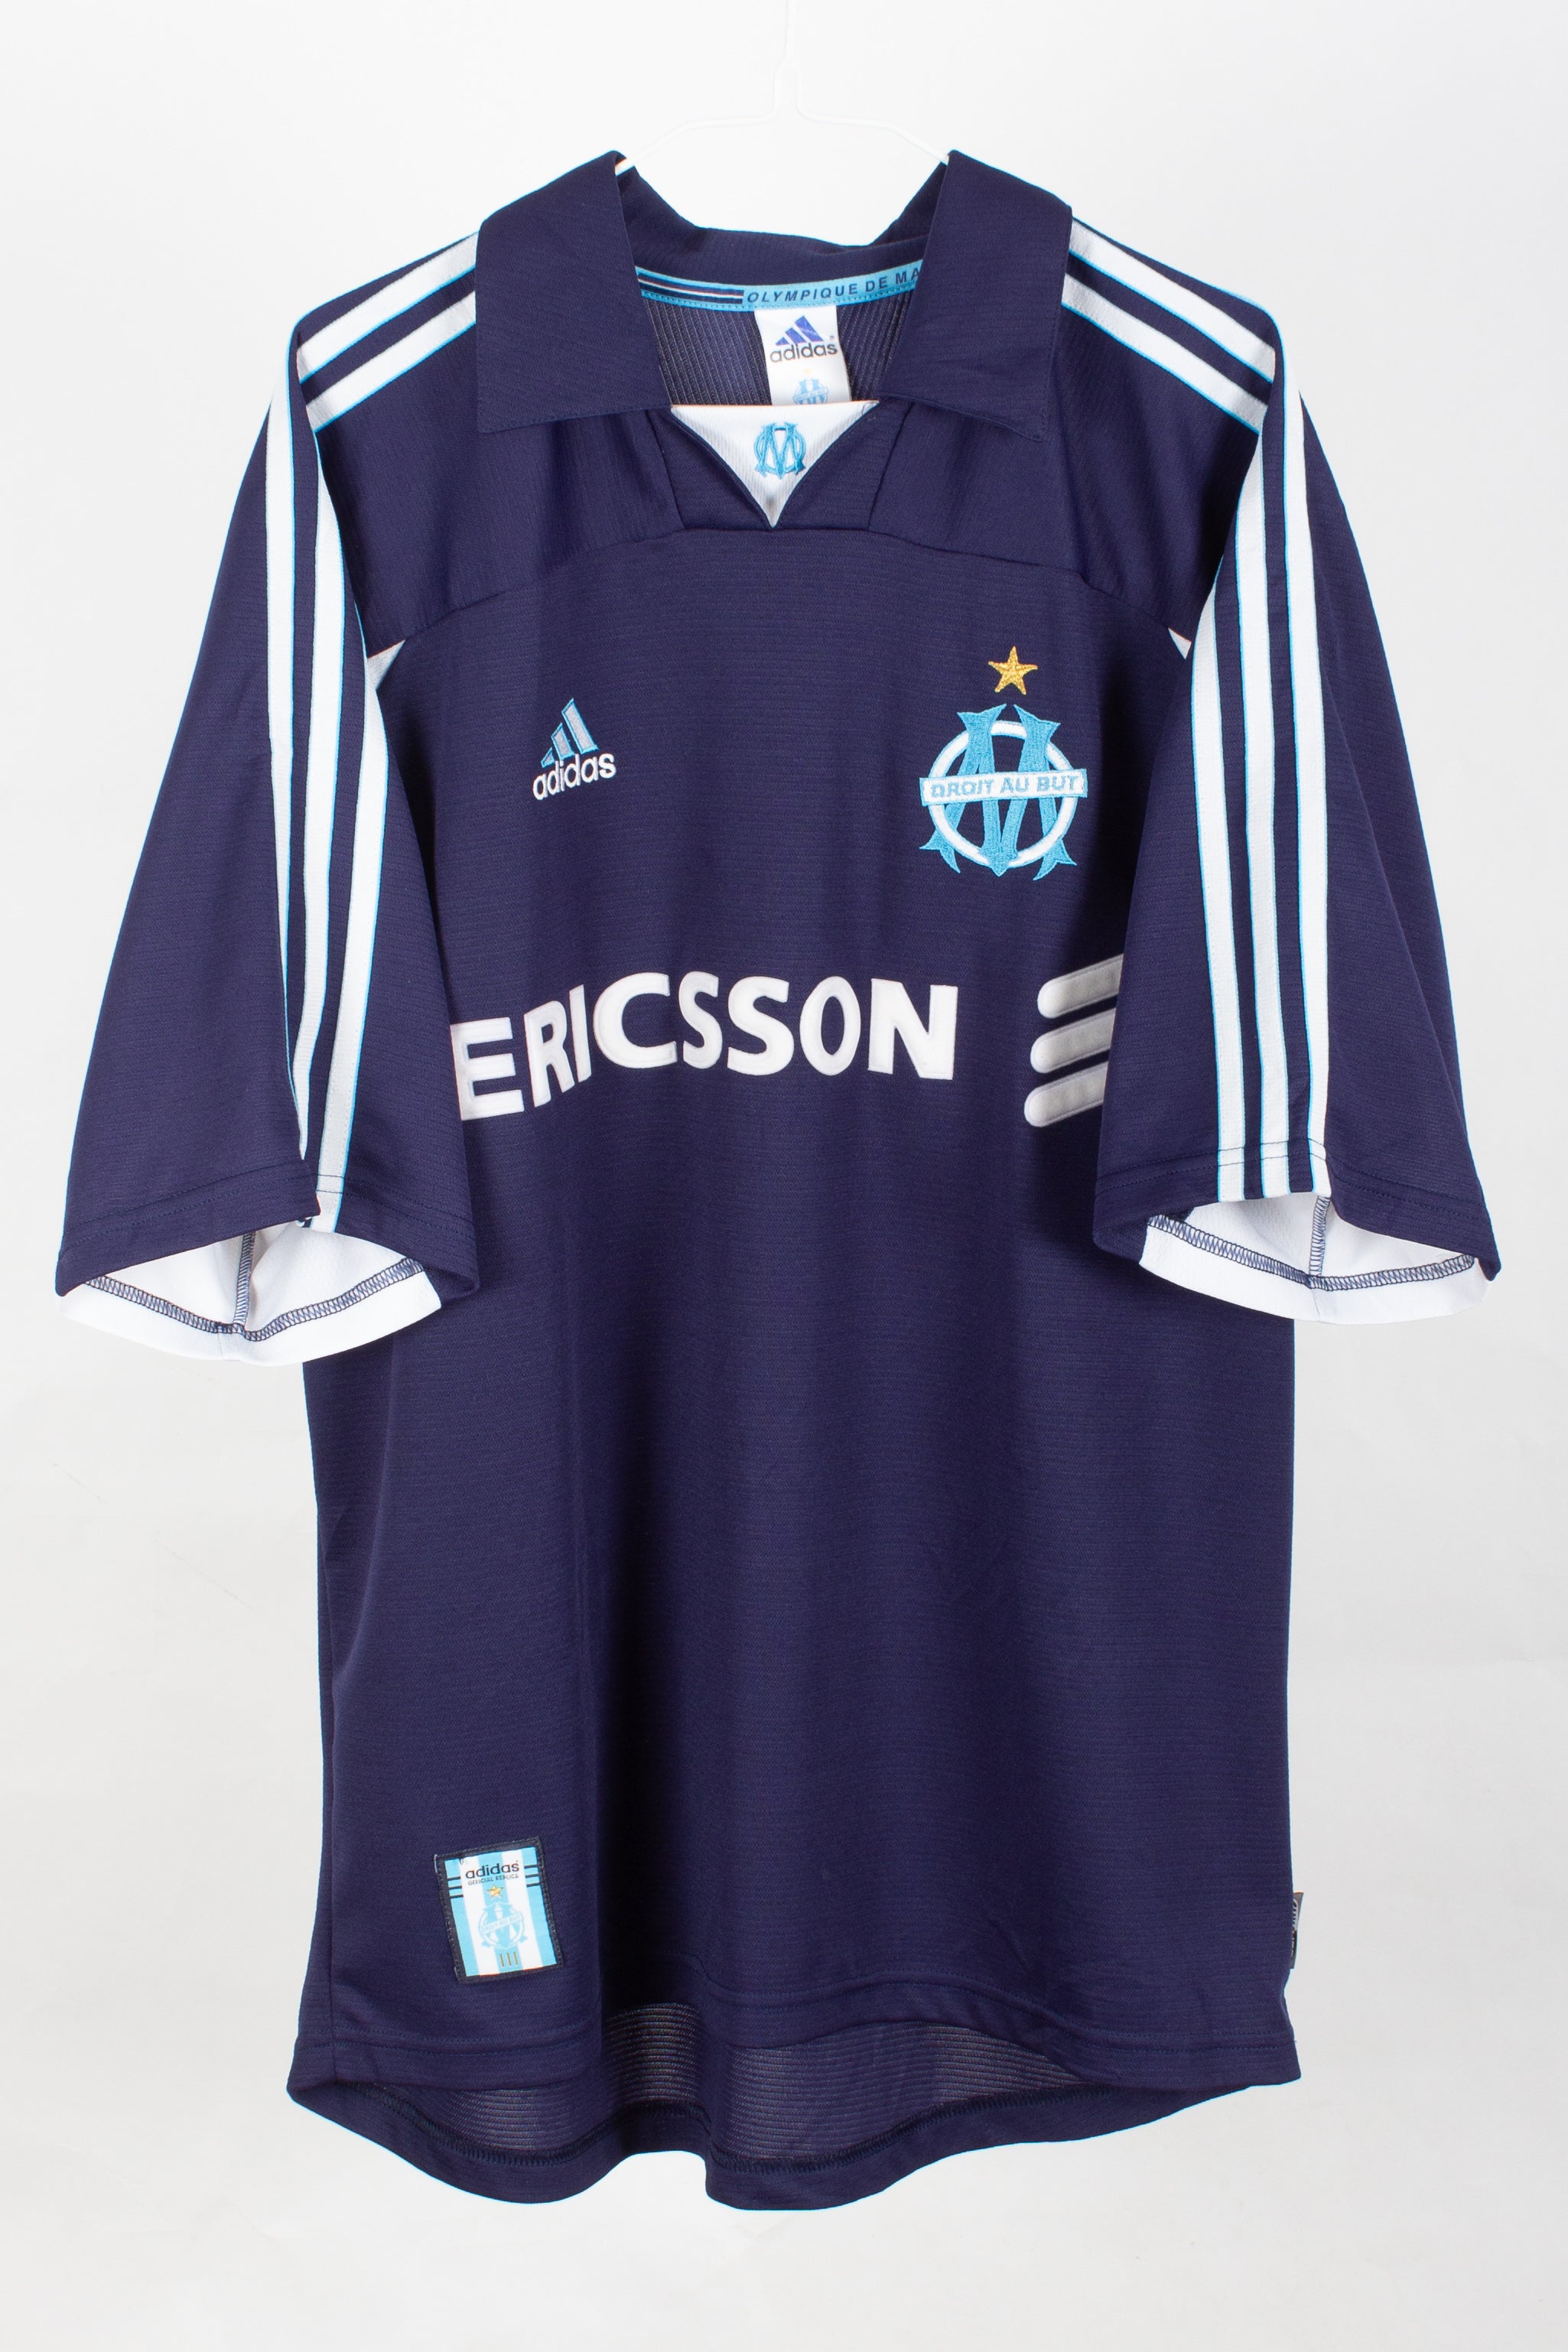 Olympique de Marseille 1999/00 Home Shirt (L)